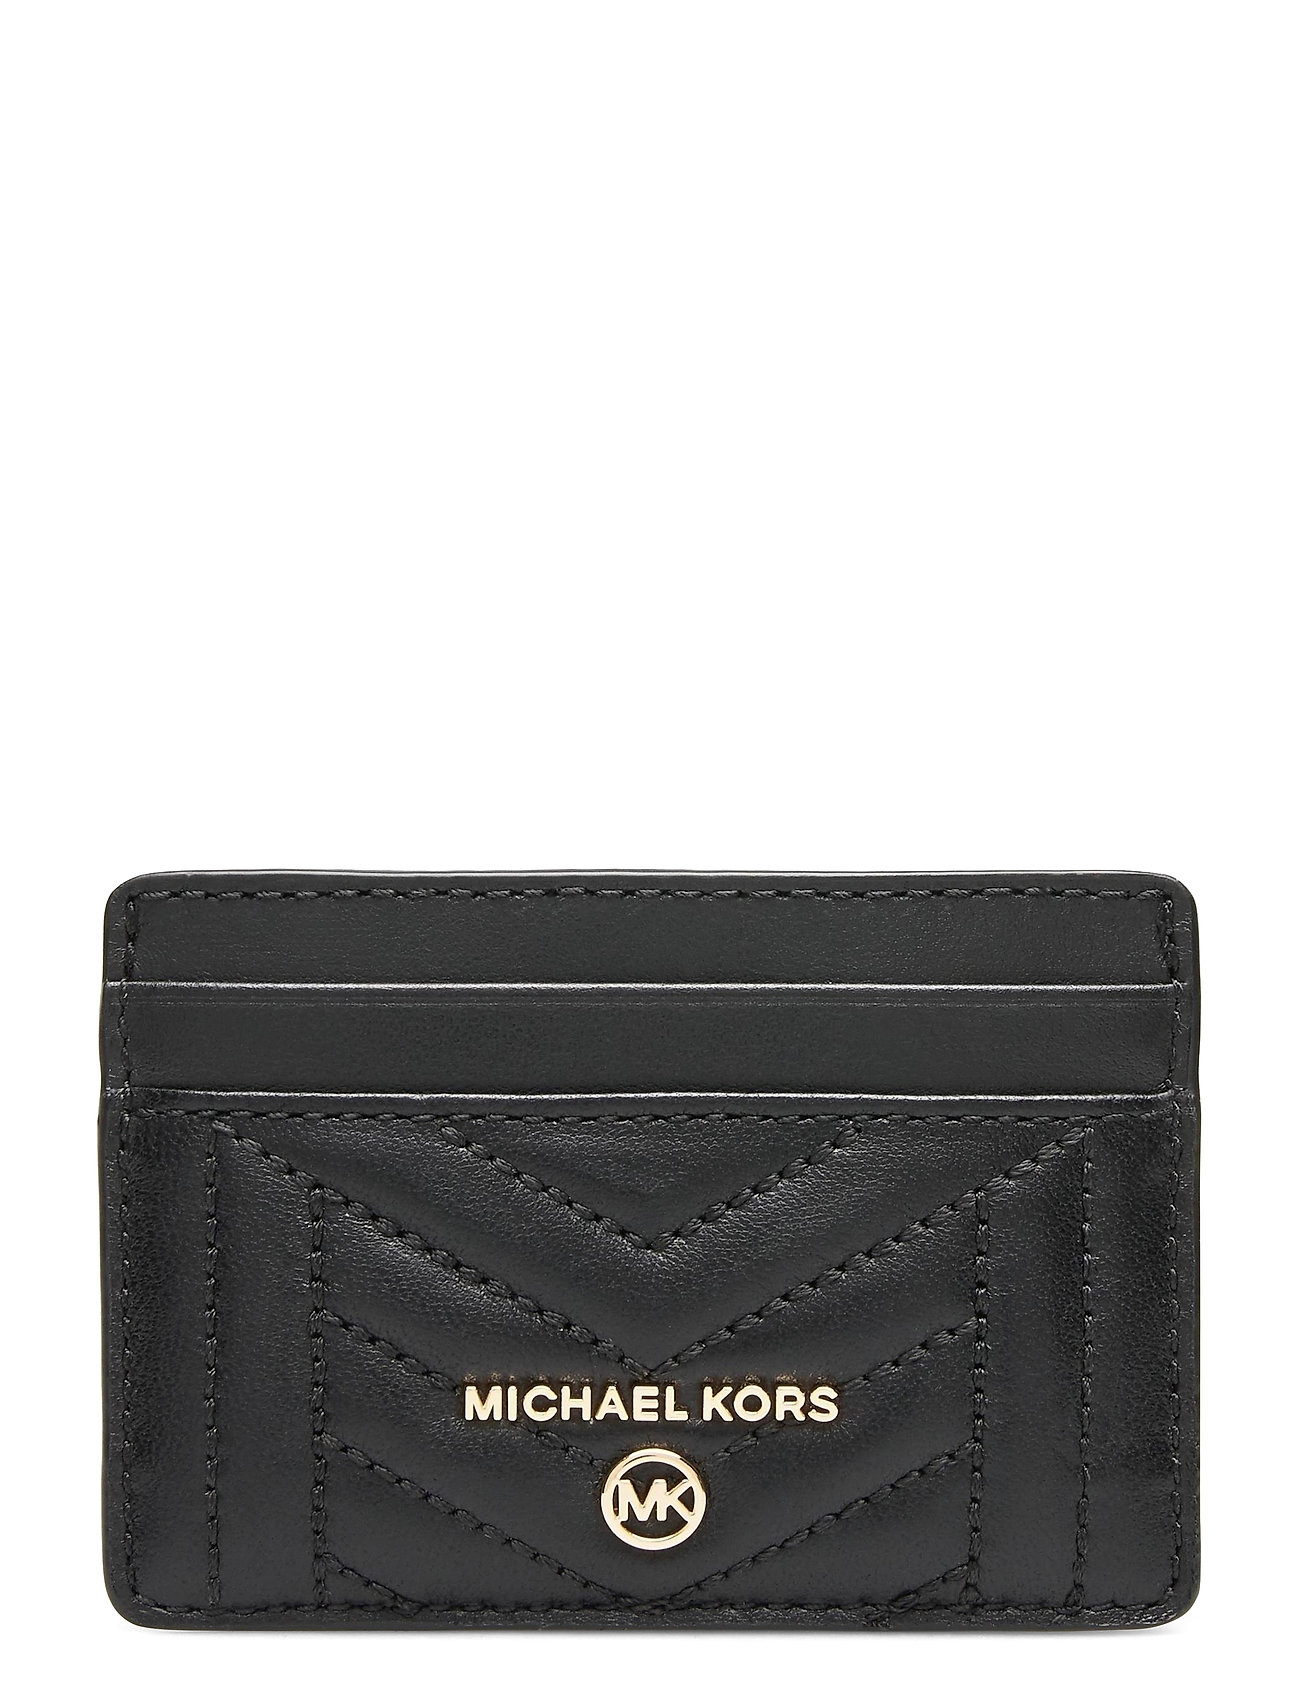 Card Holder Bags Card Holders & Wallets Card Holder Sort Michael Kors